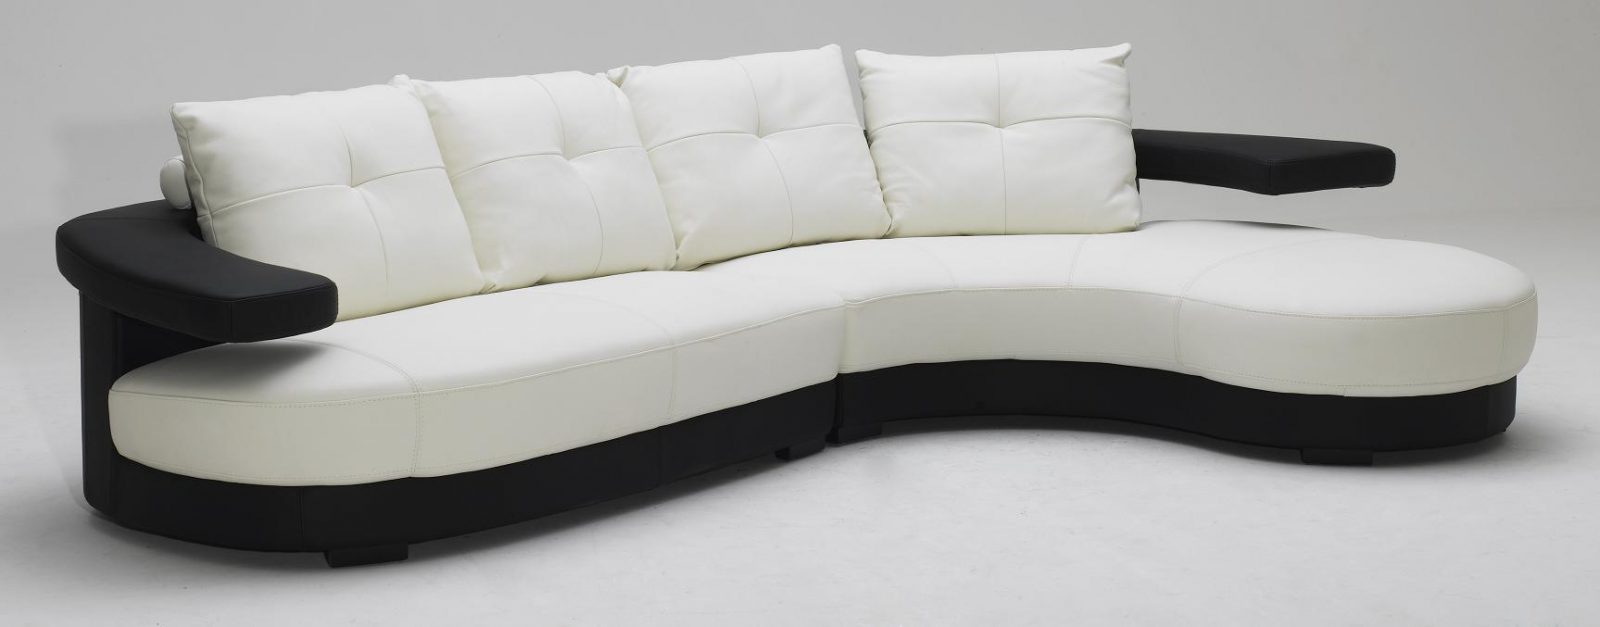 Sofá moderno de formas circulares